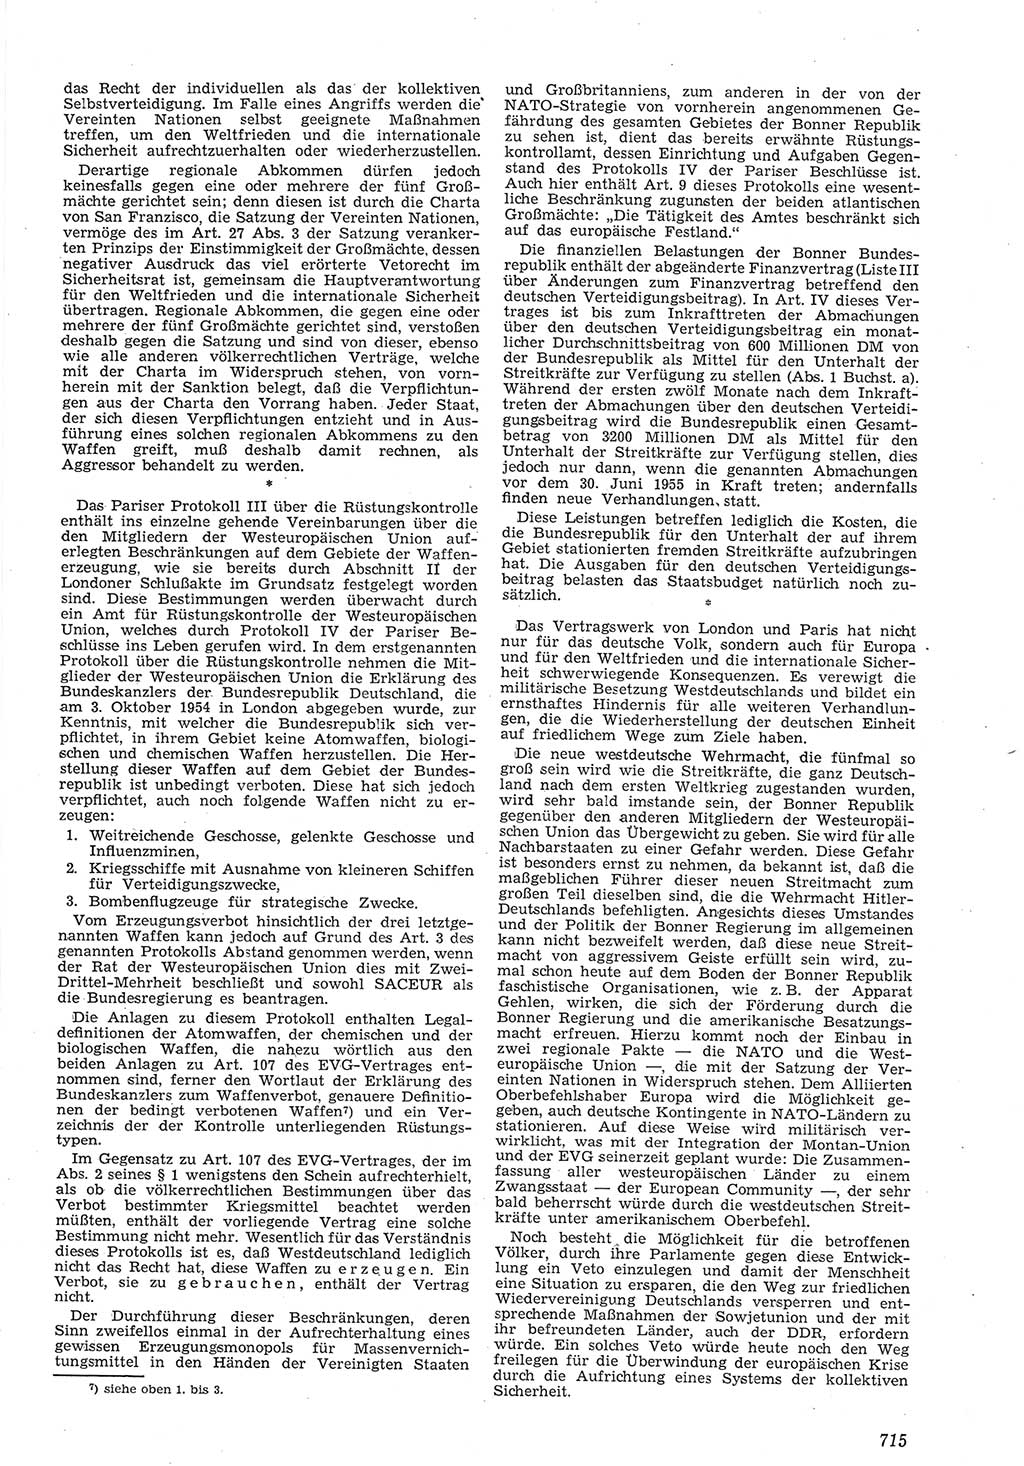 Neue Justiz (NJ), Zeitschrift für Recht und Rechtswissenschaft [Deutsche Demokratische Republik (DDR)], 8. Jahrgang 1954, Seite 715 (NJ DDR 1954, S. 715)